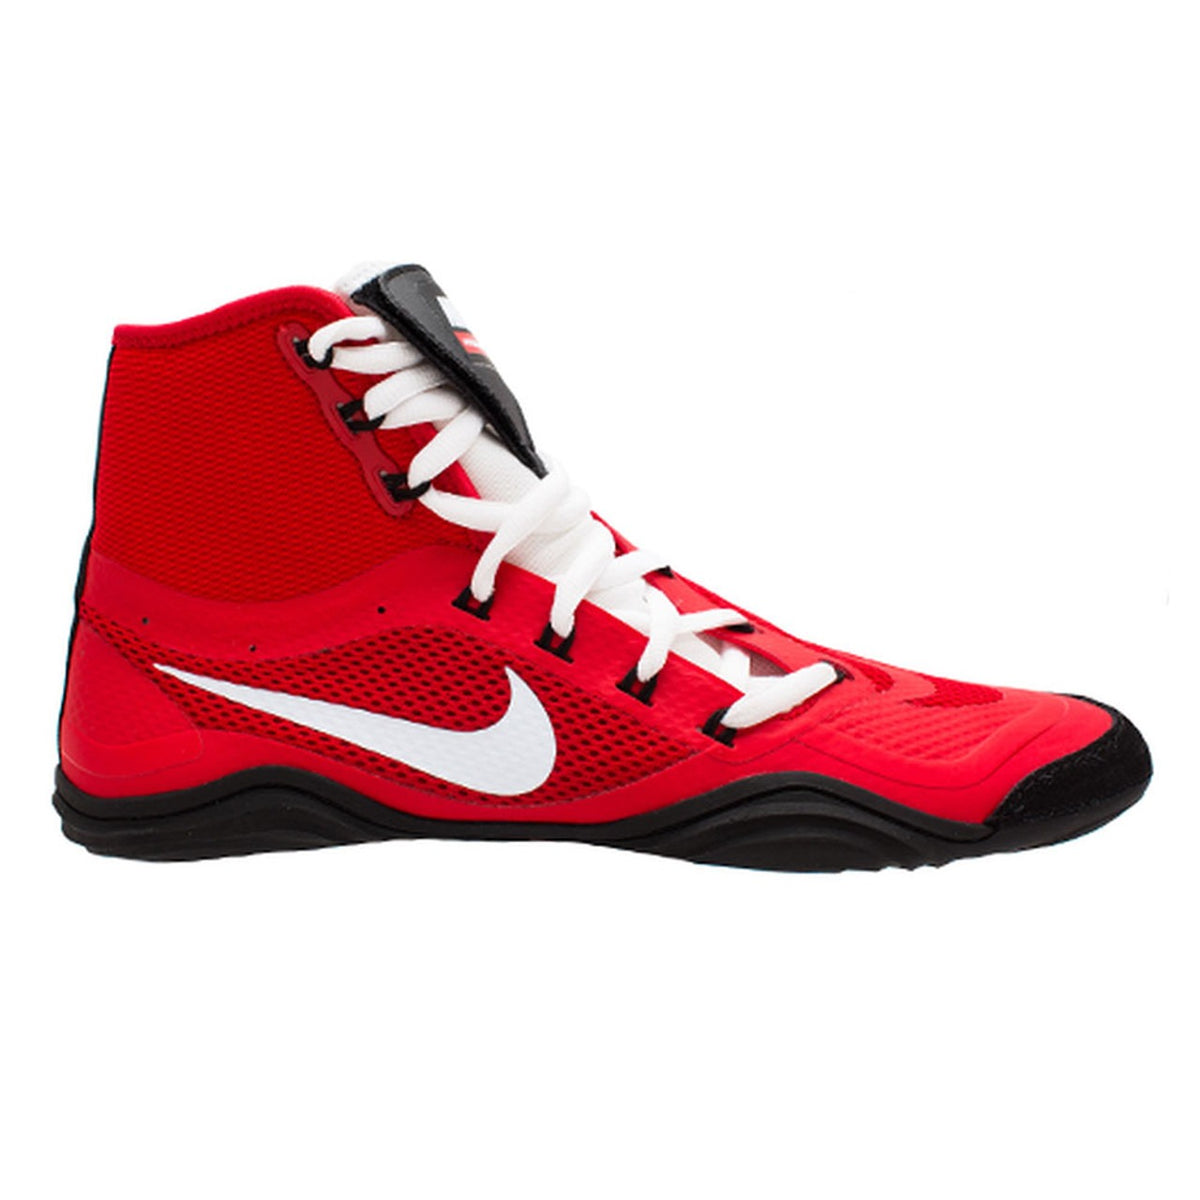 Pantofi de lupte Nike HYPERSWEEP LE. Pantoful de luptă profesional pentru toți luptătorii ambițioși. Cu cea mai avansată tehnologie, Nike Hypersweep vă oferă multă aderență pe covorașul de lupte. În antrenament și competiție. Aici in culoarea rosu.